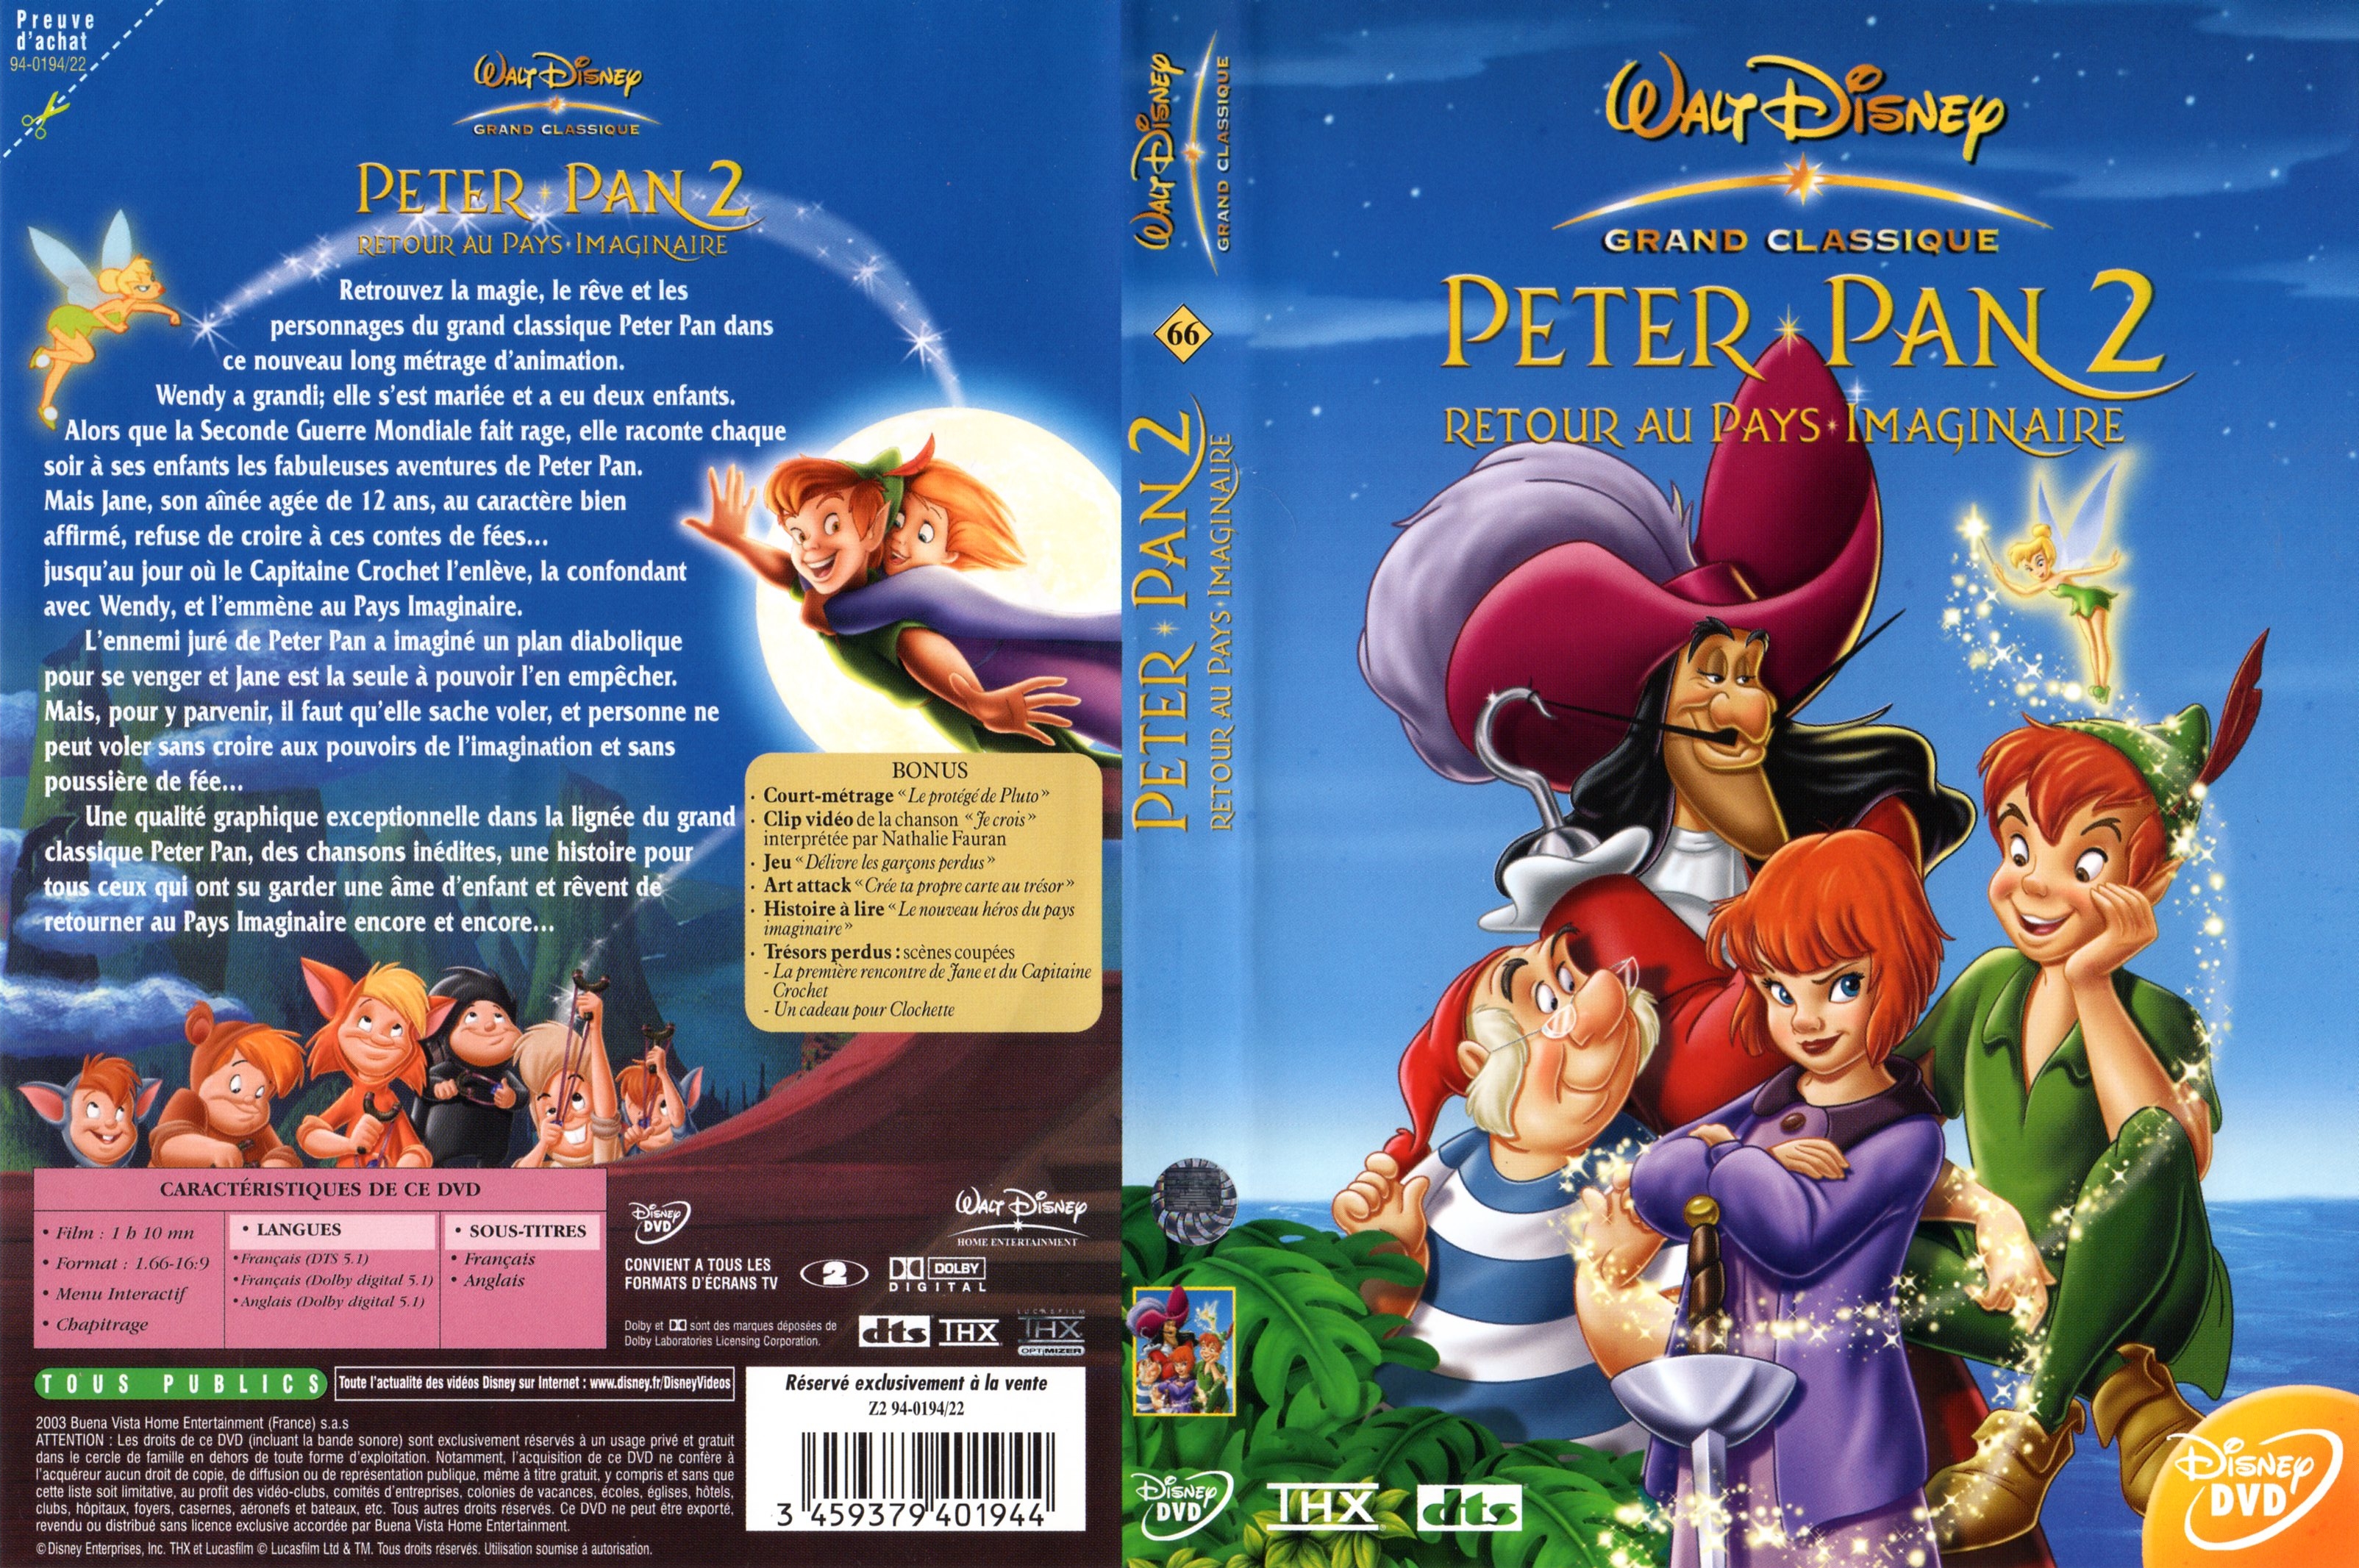 Jaquette DVD Peter Pan 2